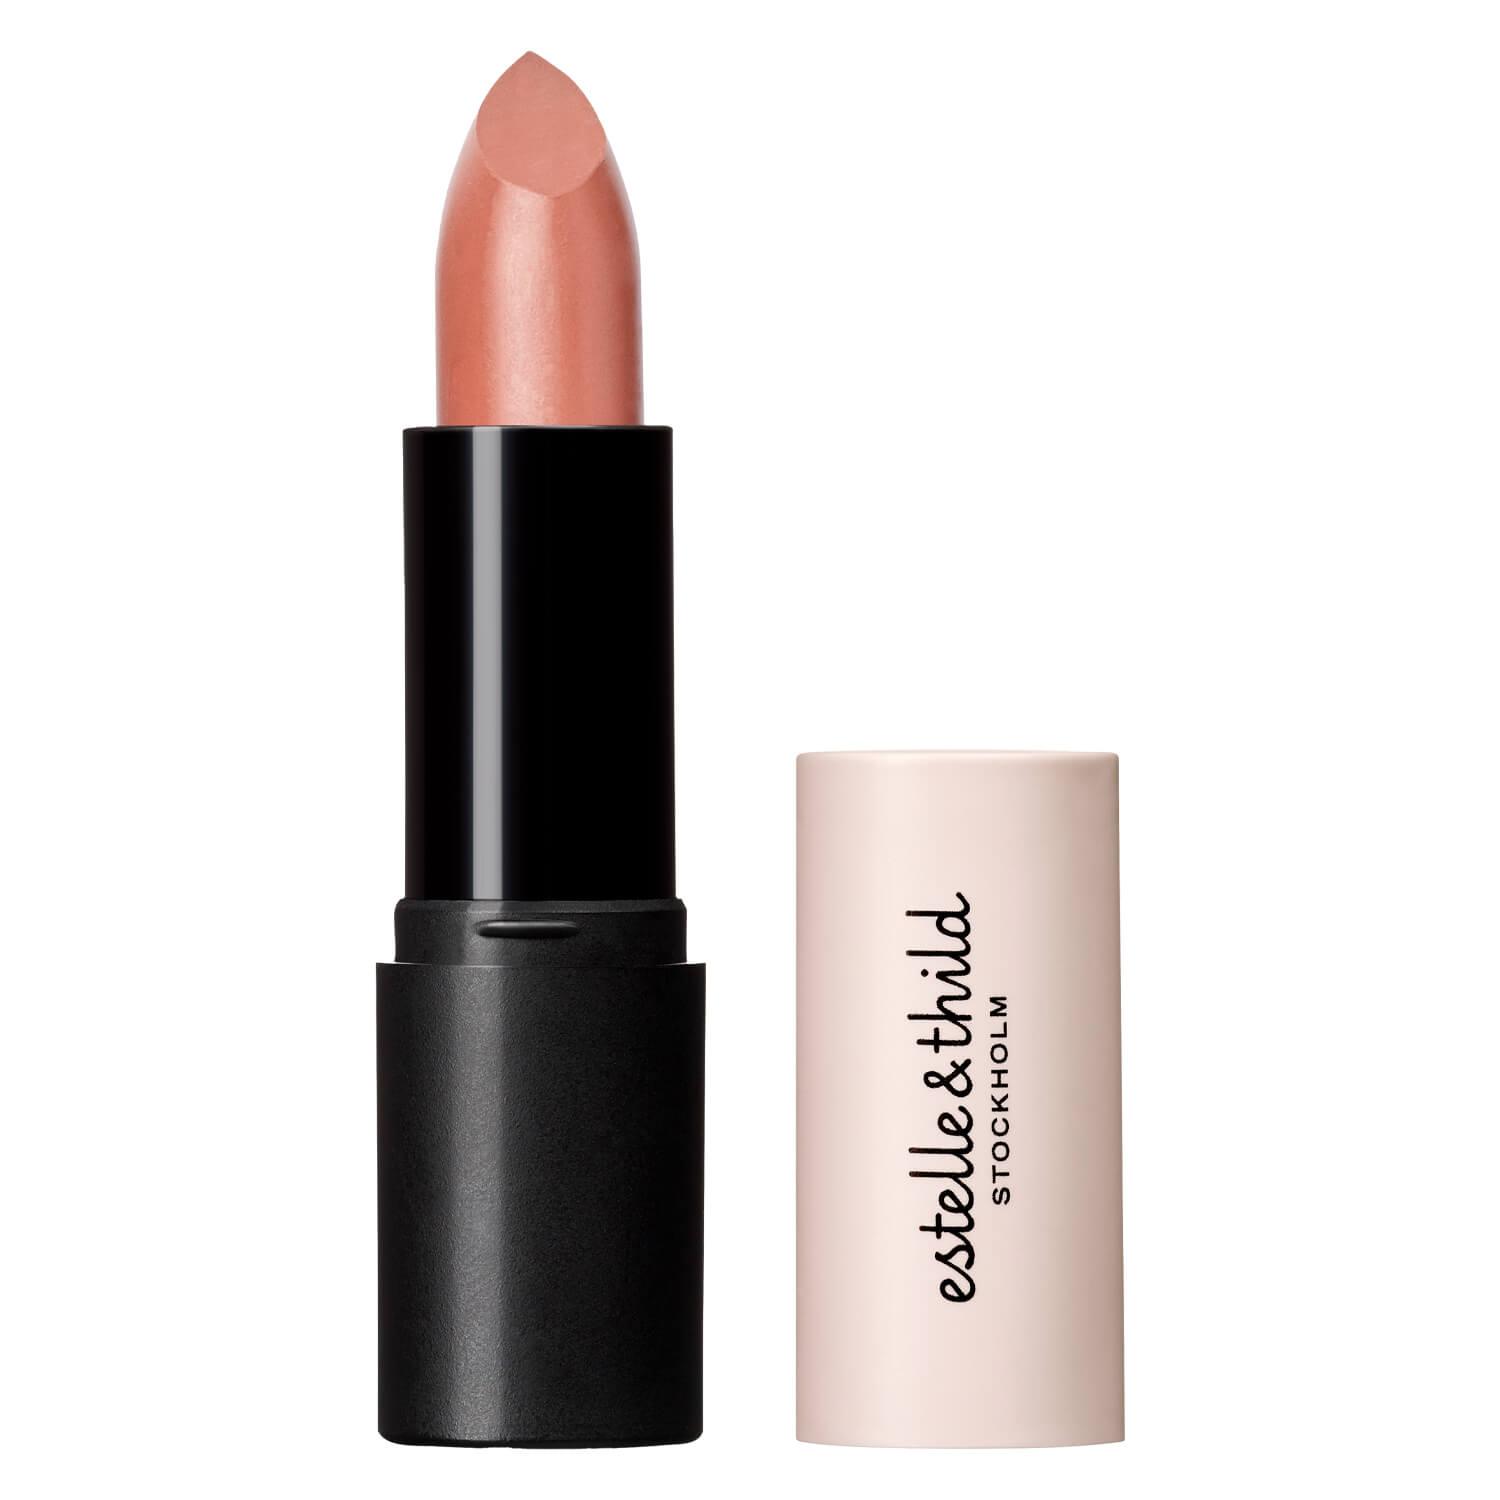 Estelle&Thild Make-Up - Cream Lipstick Dusty Beige